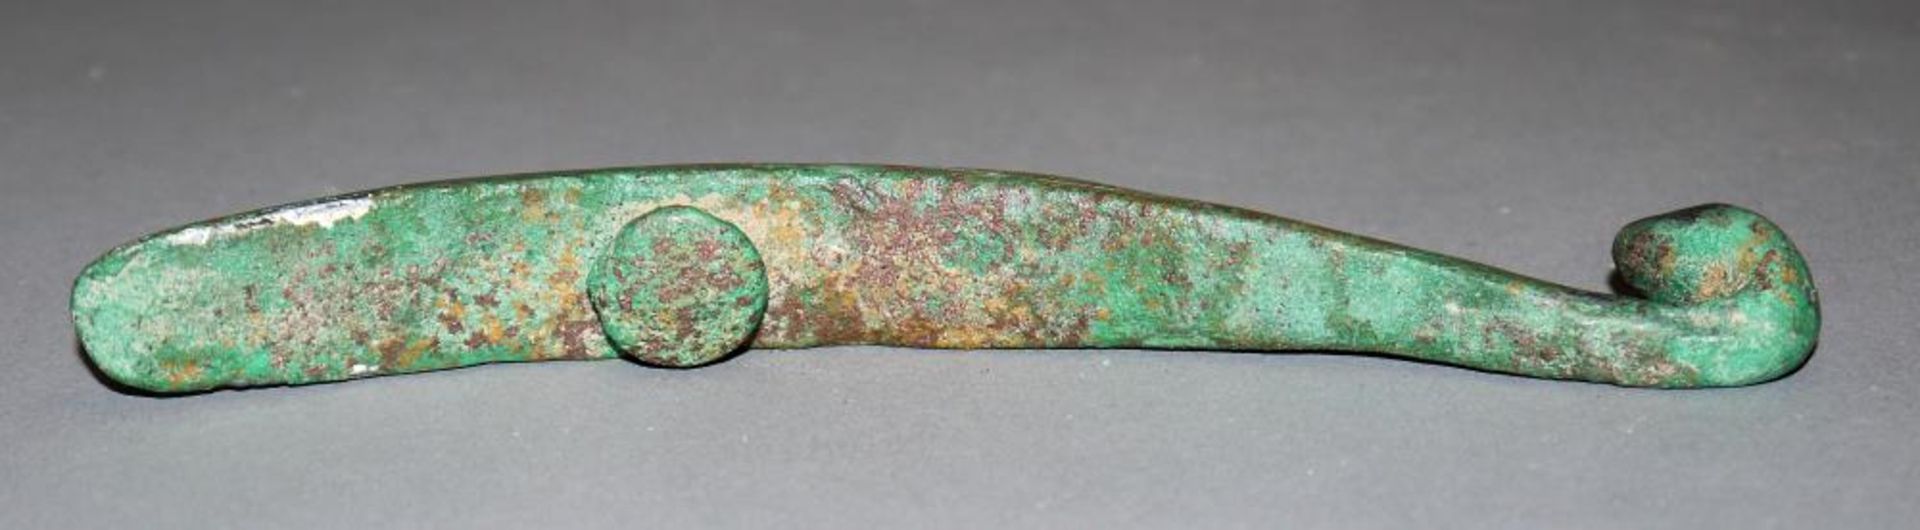 Großer Gürtelhaken aus Bronze, wohl Streitende Reiche oder Han, China 3. Jh. v. Chr. oder später - Image 3 of 3